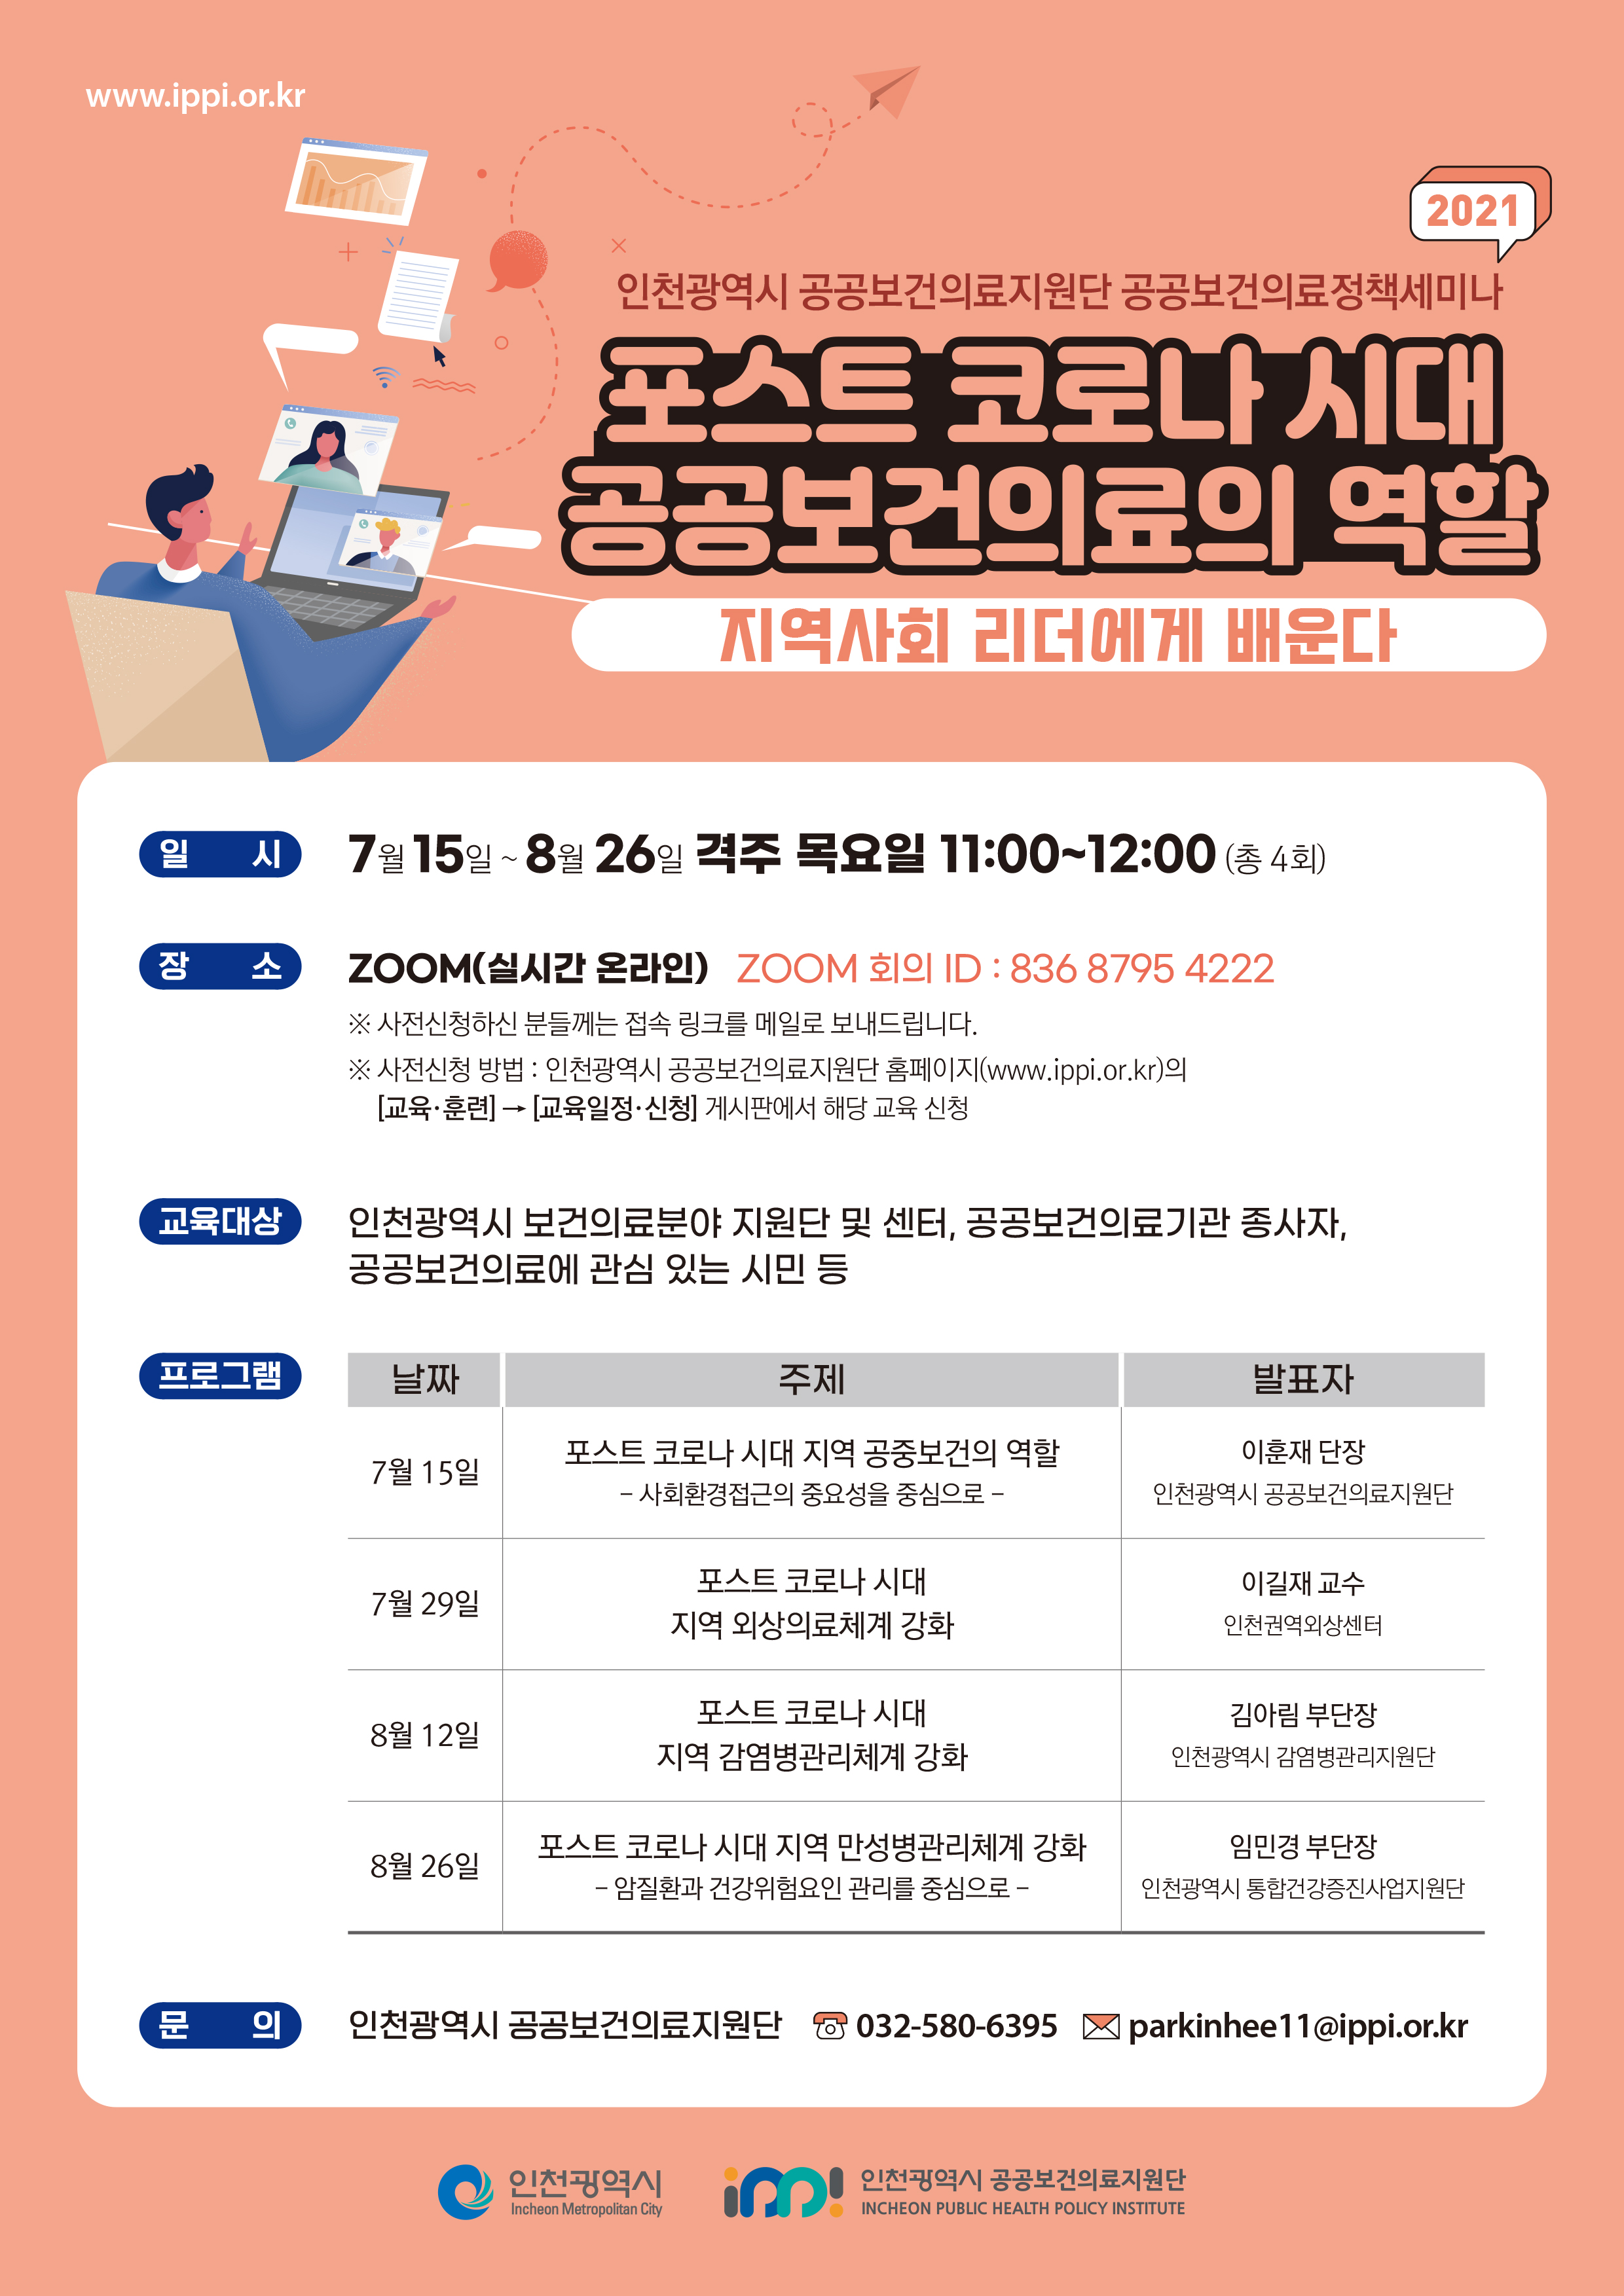 인천광역시 공공보건의료지원단 2021 공공보건의료정책세미나 포스터